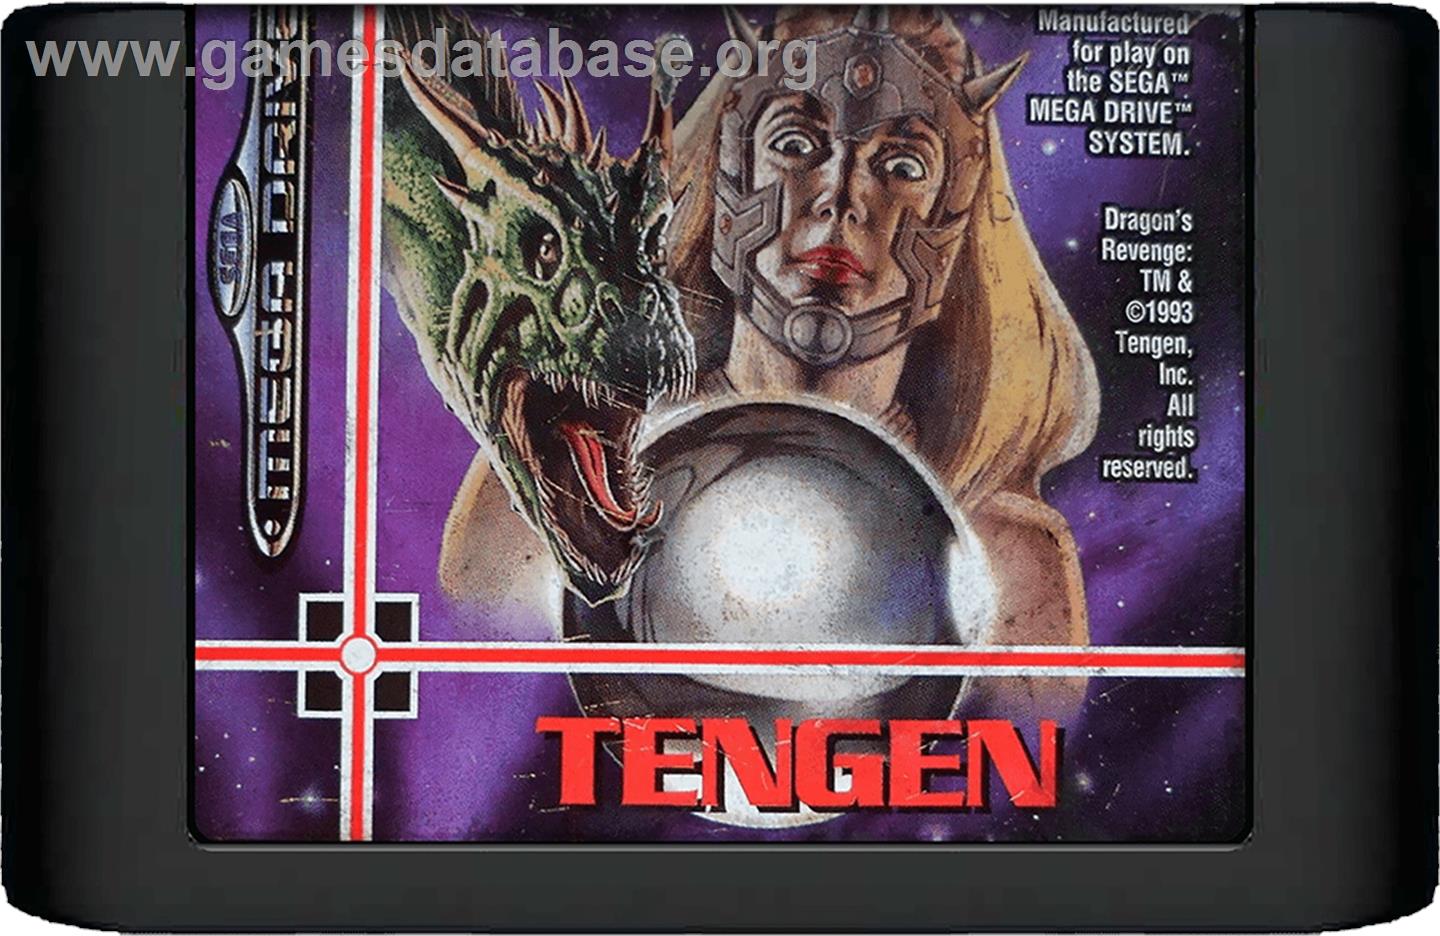 Dragon's Revenge - Sega Genesis - Artwork - Cartridge